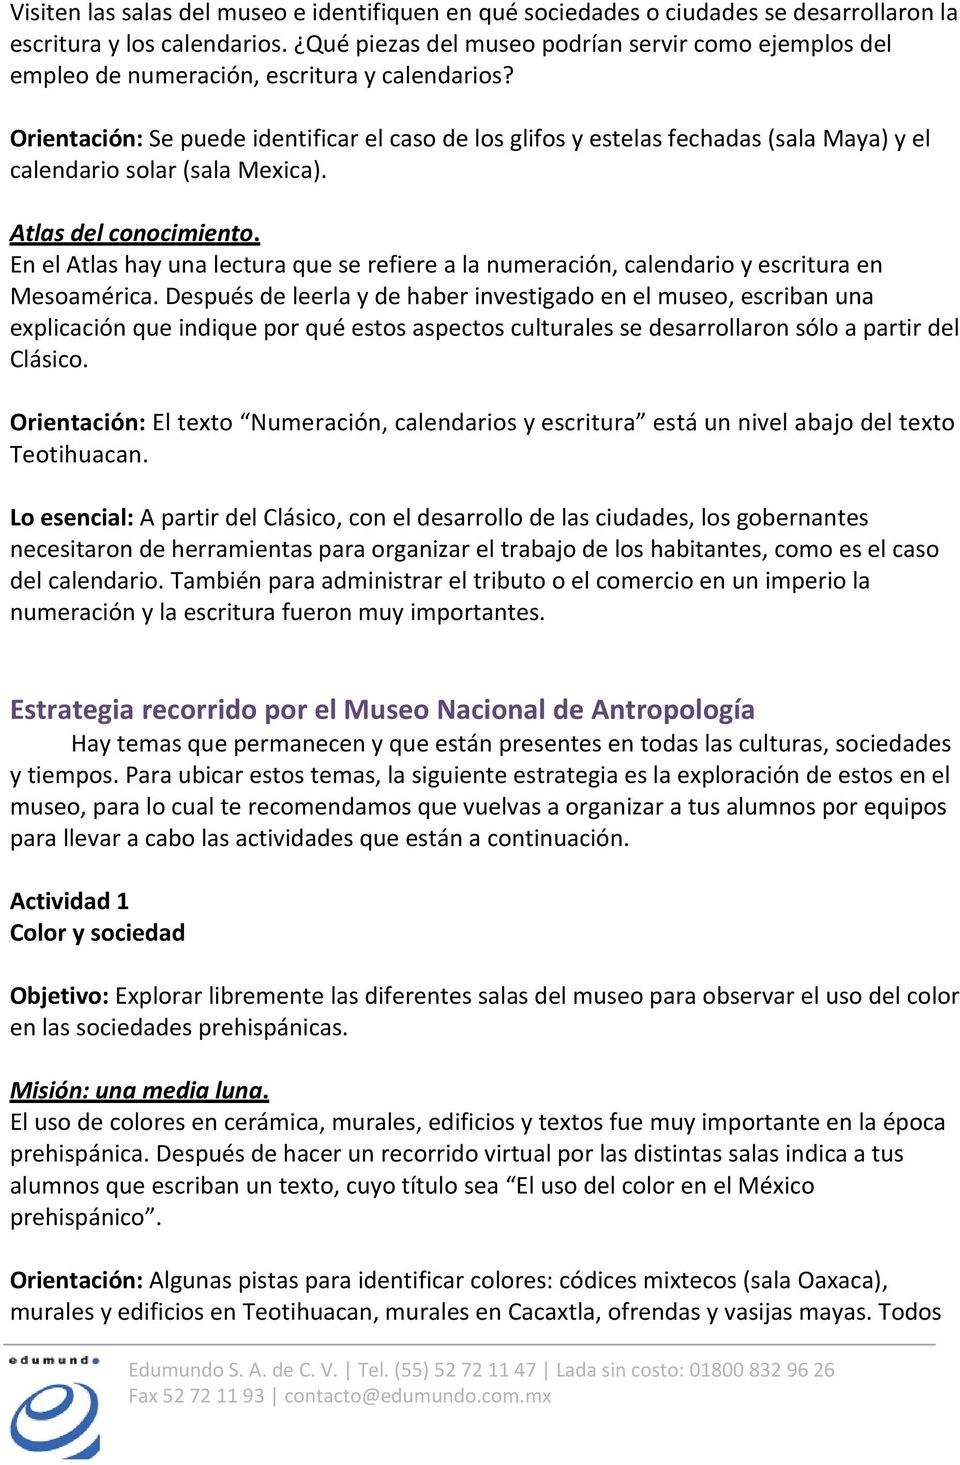 Orientación: Se puede identificar el caso de los glifos y estelas fechadas (sala Maya) y el calendario solar (sala Mexica).